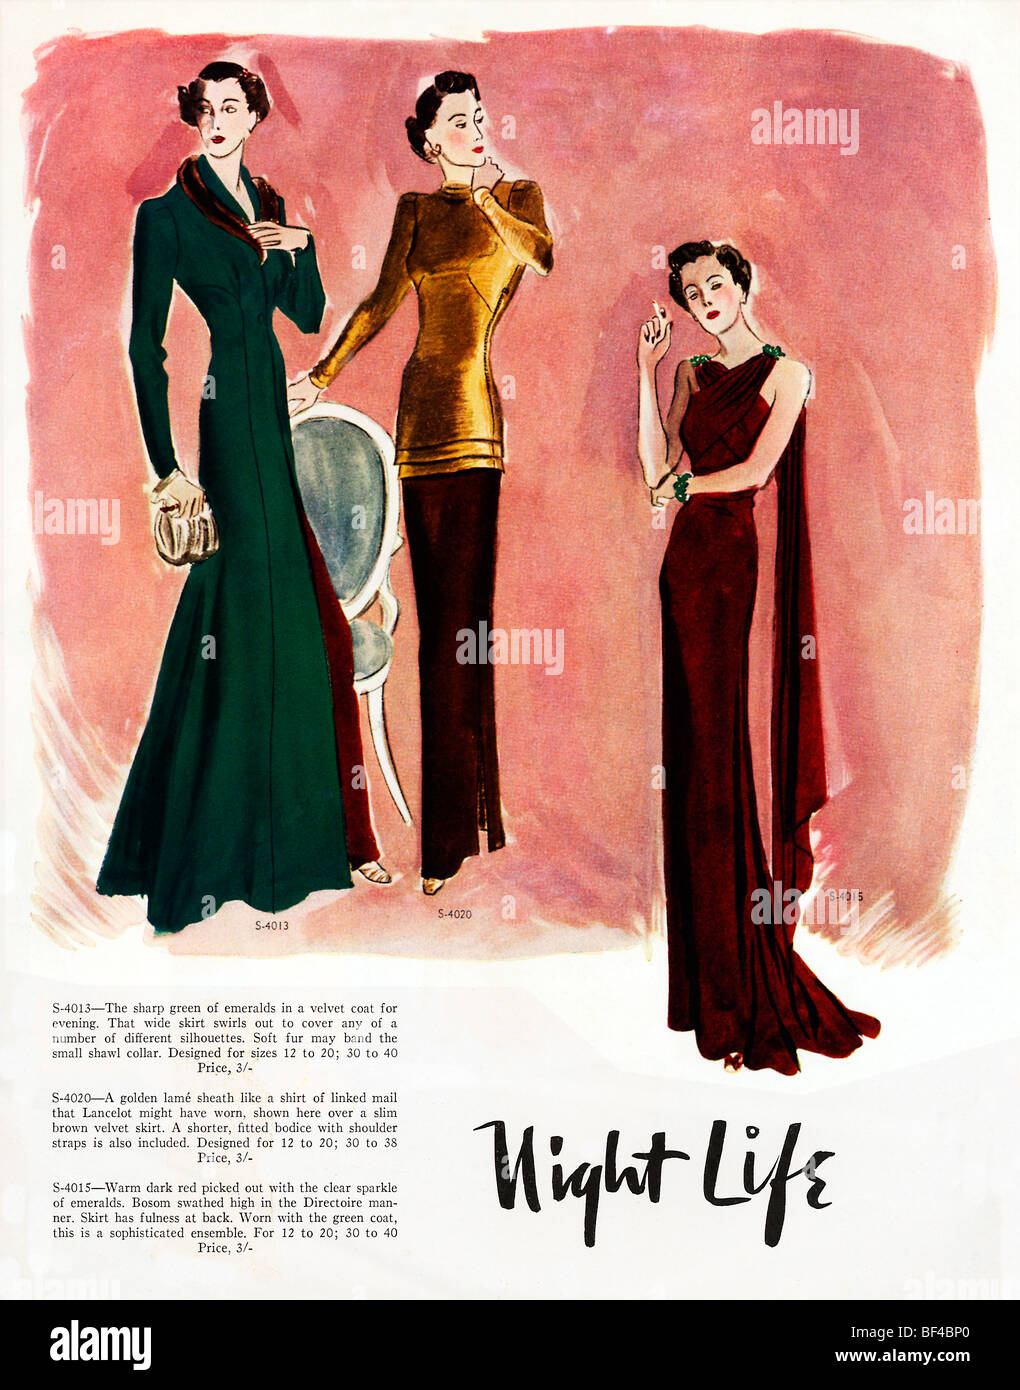 La vie de nuit, deux années 1930, magazine de mode illustration de robes de soirée élégante Banque D'Images